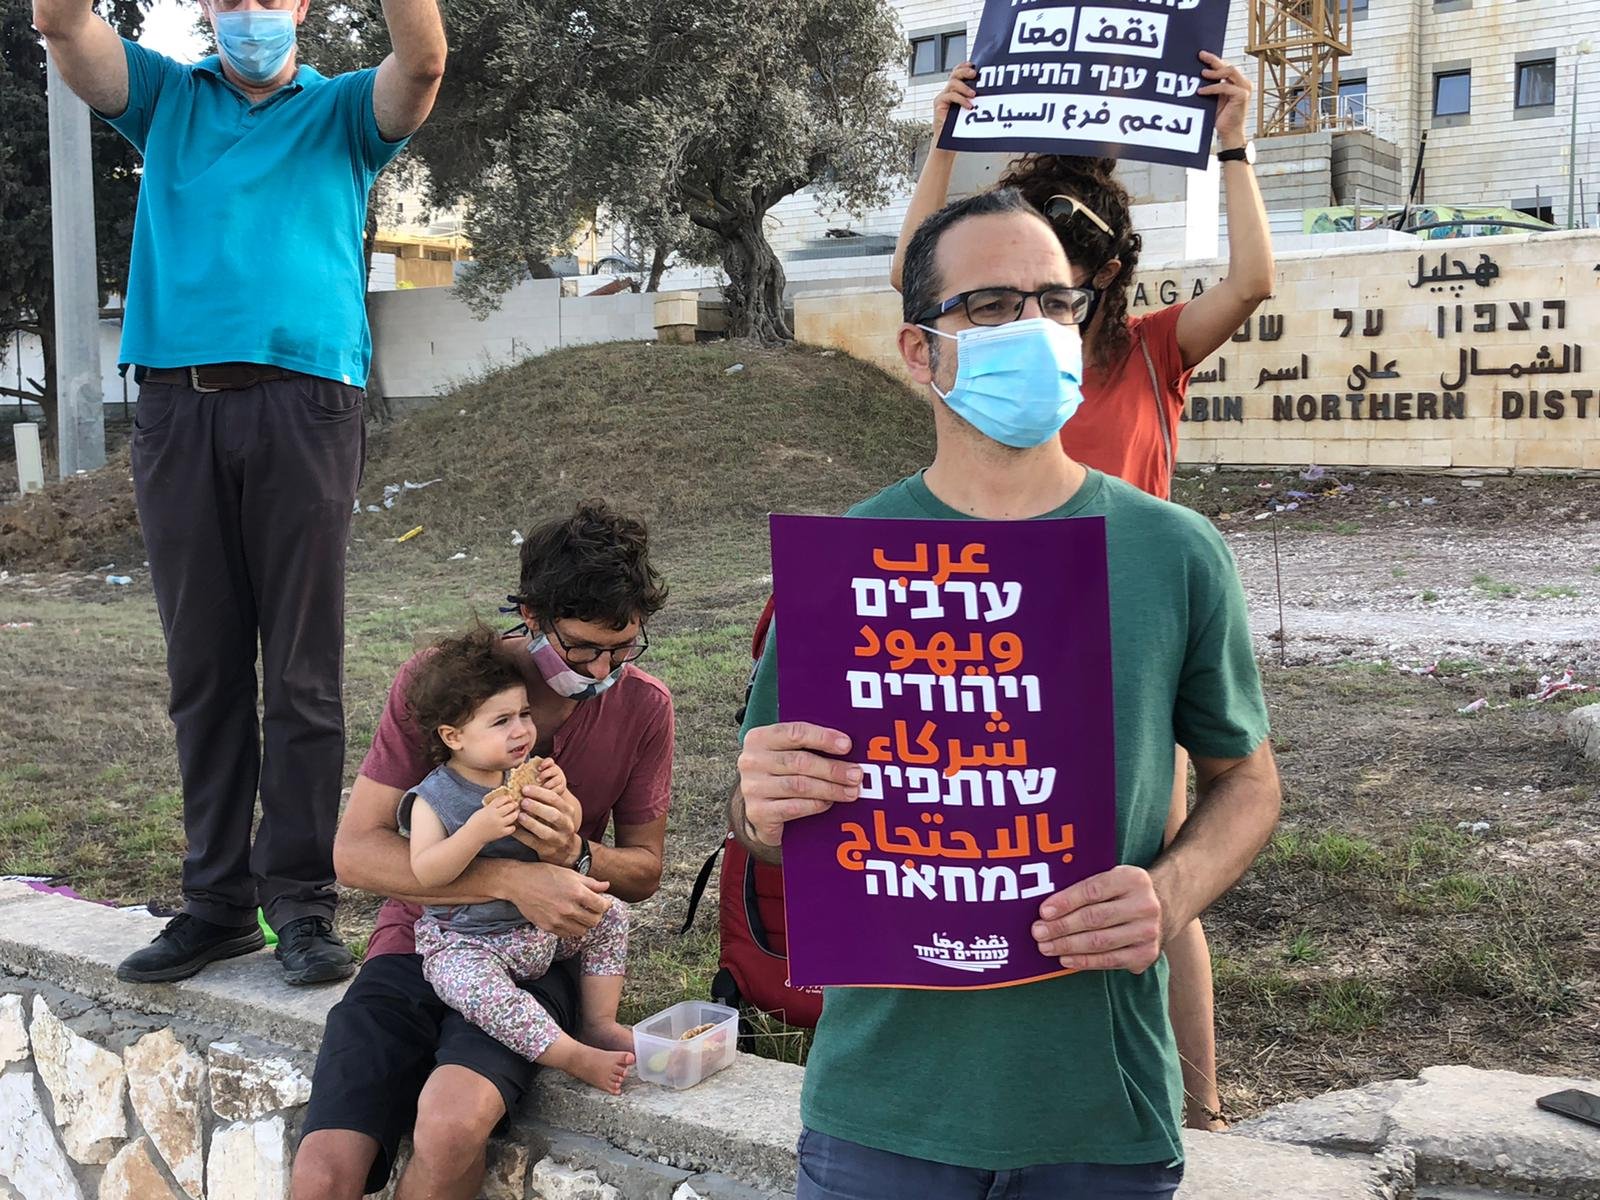 وقفة احتجاجية امام مبنى المحاكم في الناصرة تطالب بالعدالة الاجتماعية وتغيير المنظومة الحكومية الحالية-9